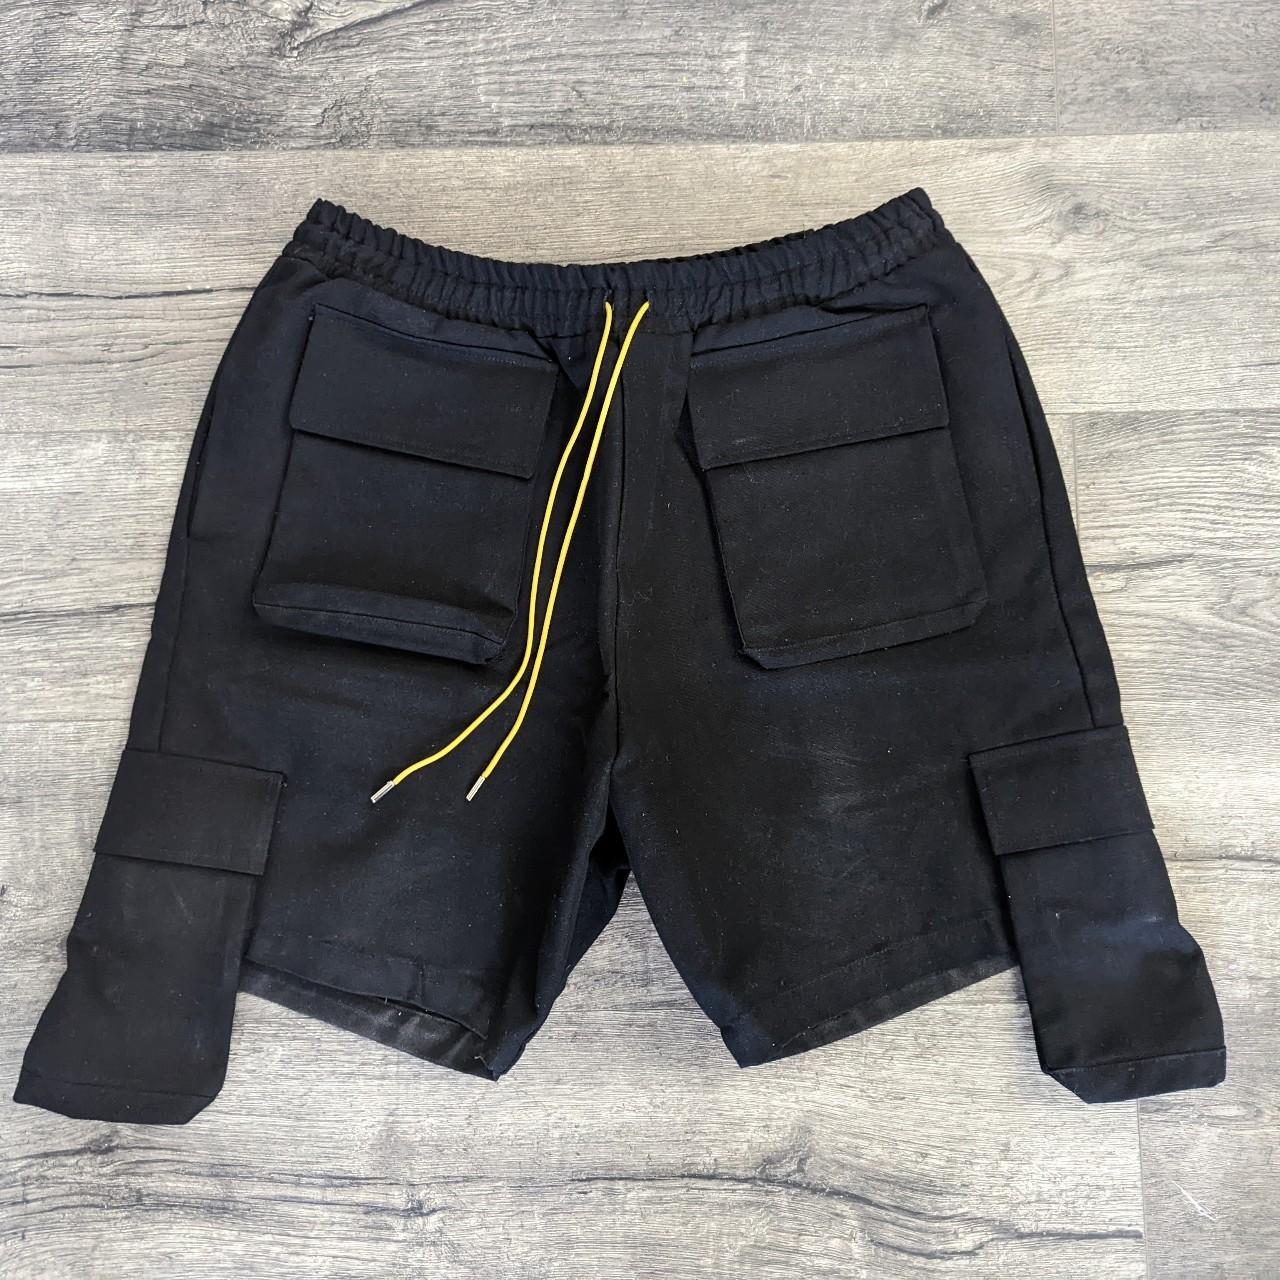 Product Image 1 - Rhude Black Cargo Shorts

- Condition